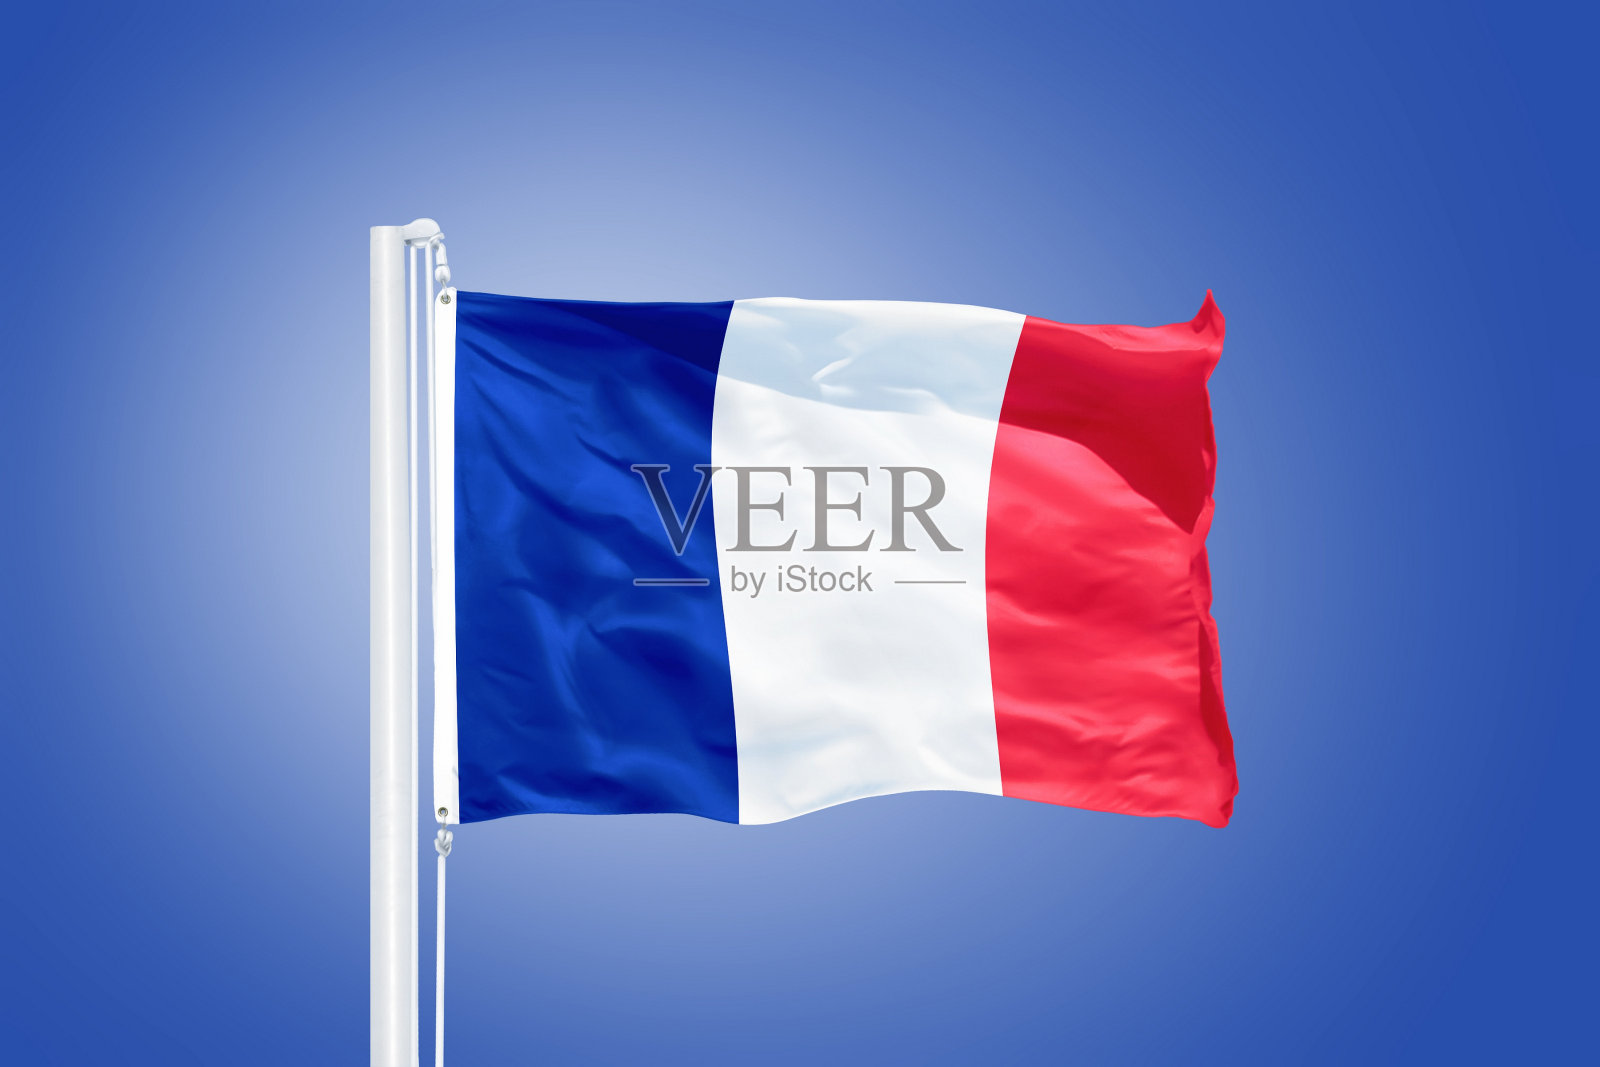 法国国旗的图案图片